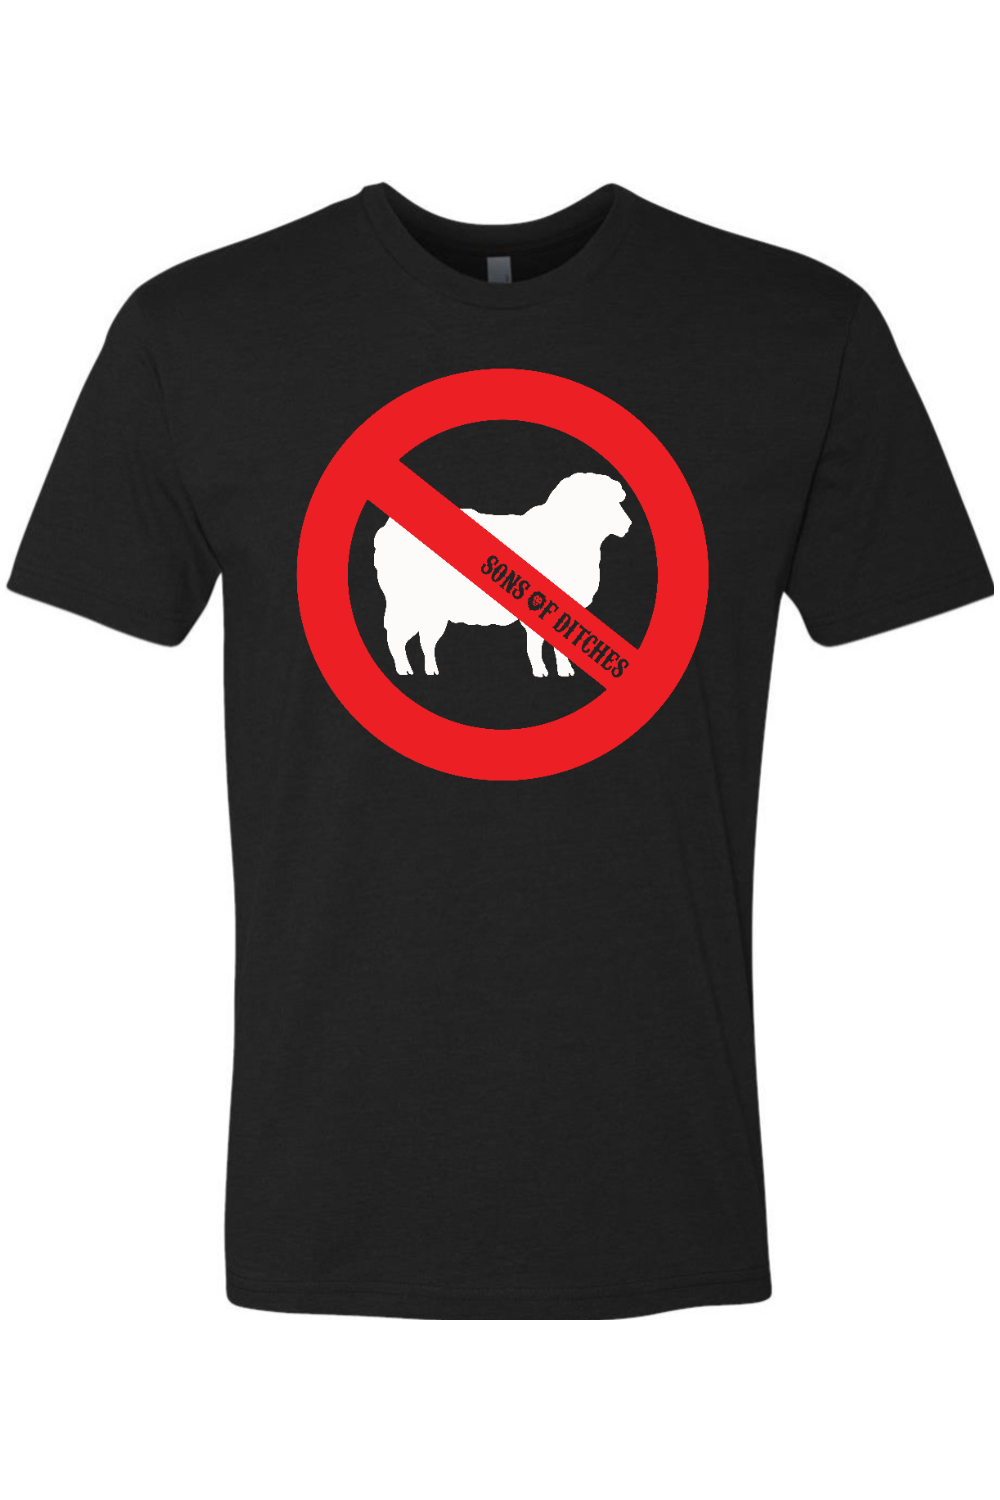 New No Sheep T-shirt